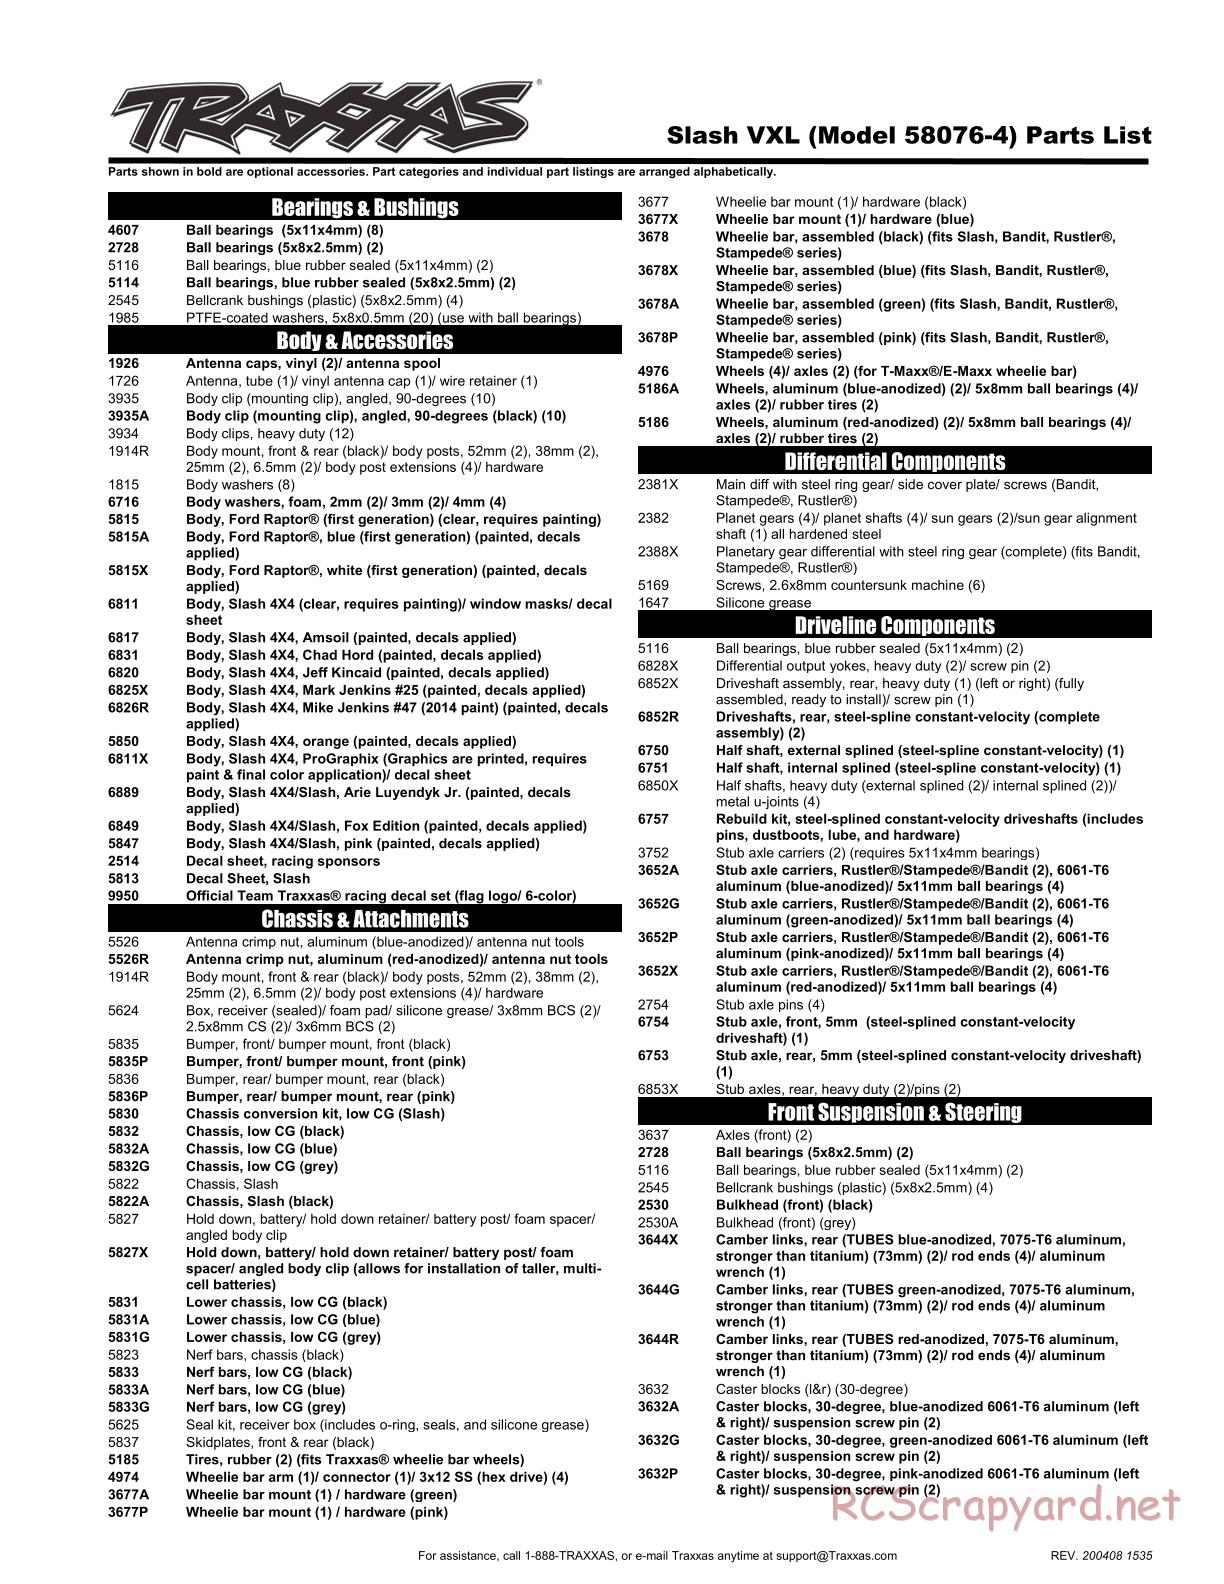 Traxxas - Slash VXL TSM 2WD - Parts List - Page 1